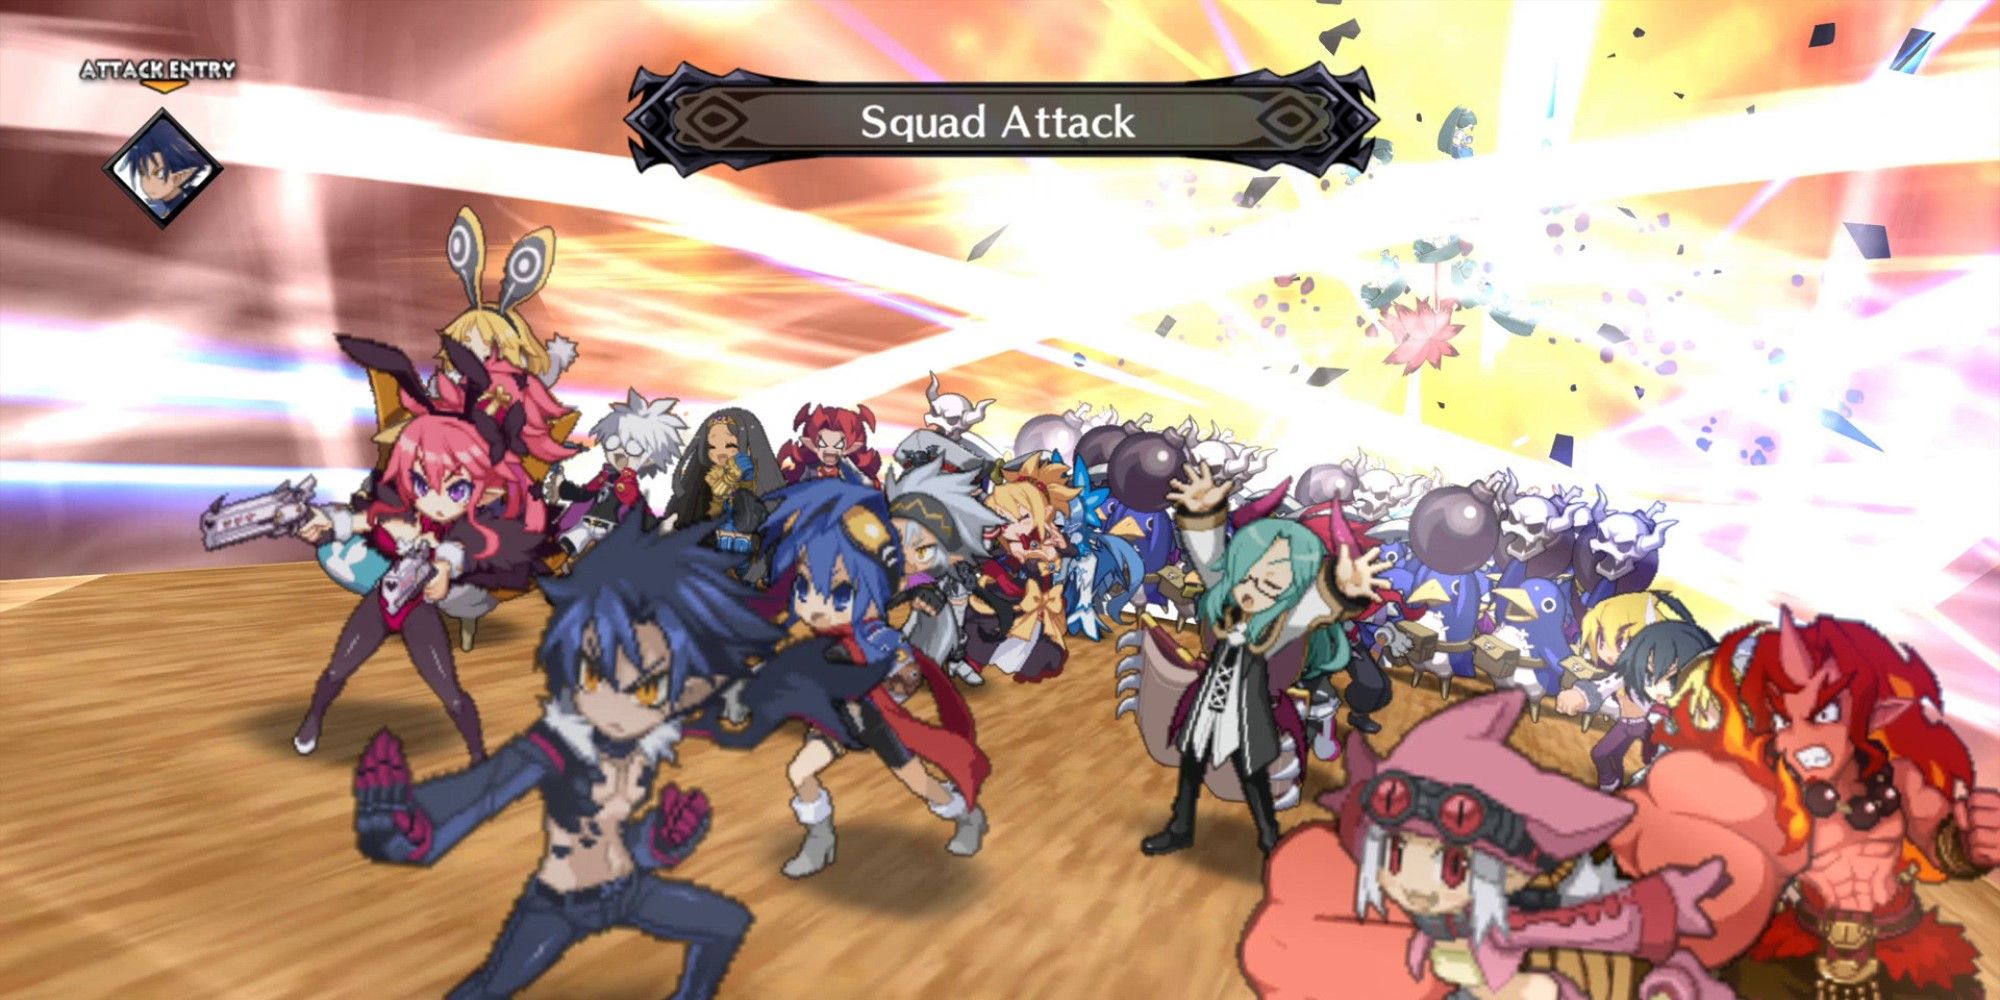 disgaea 5 squad attack